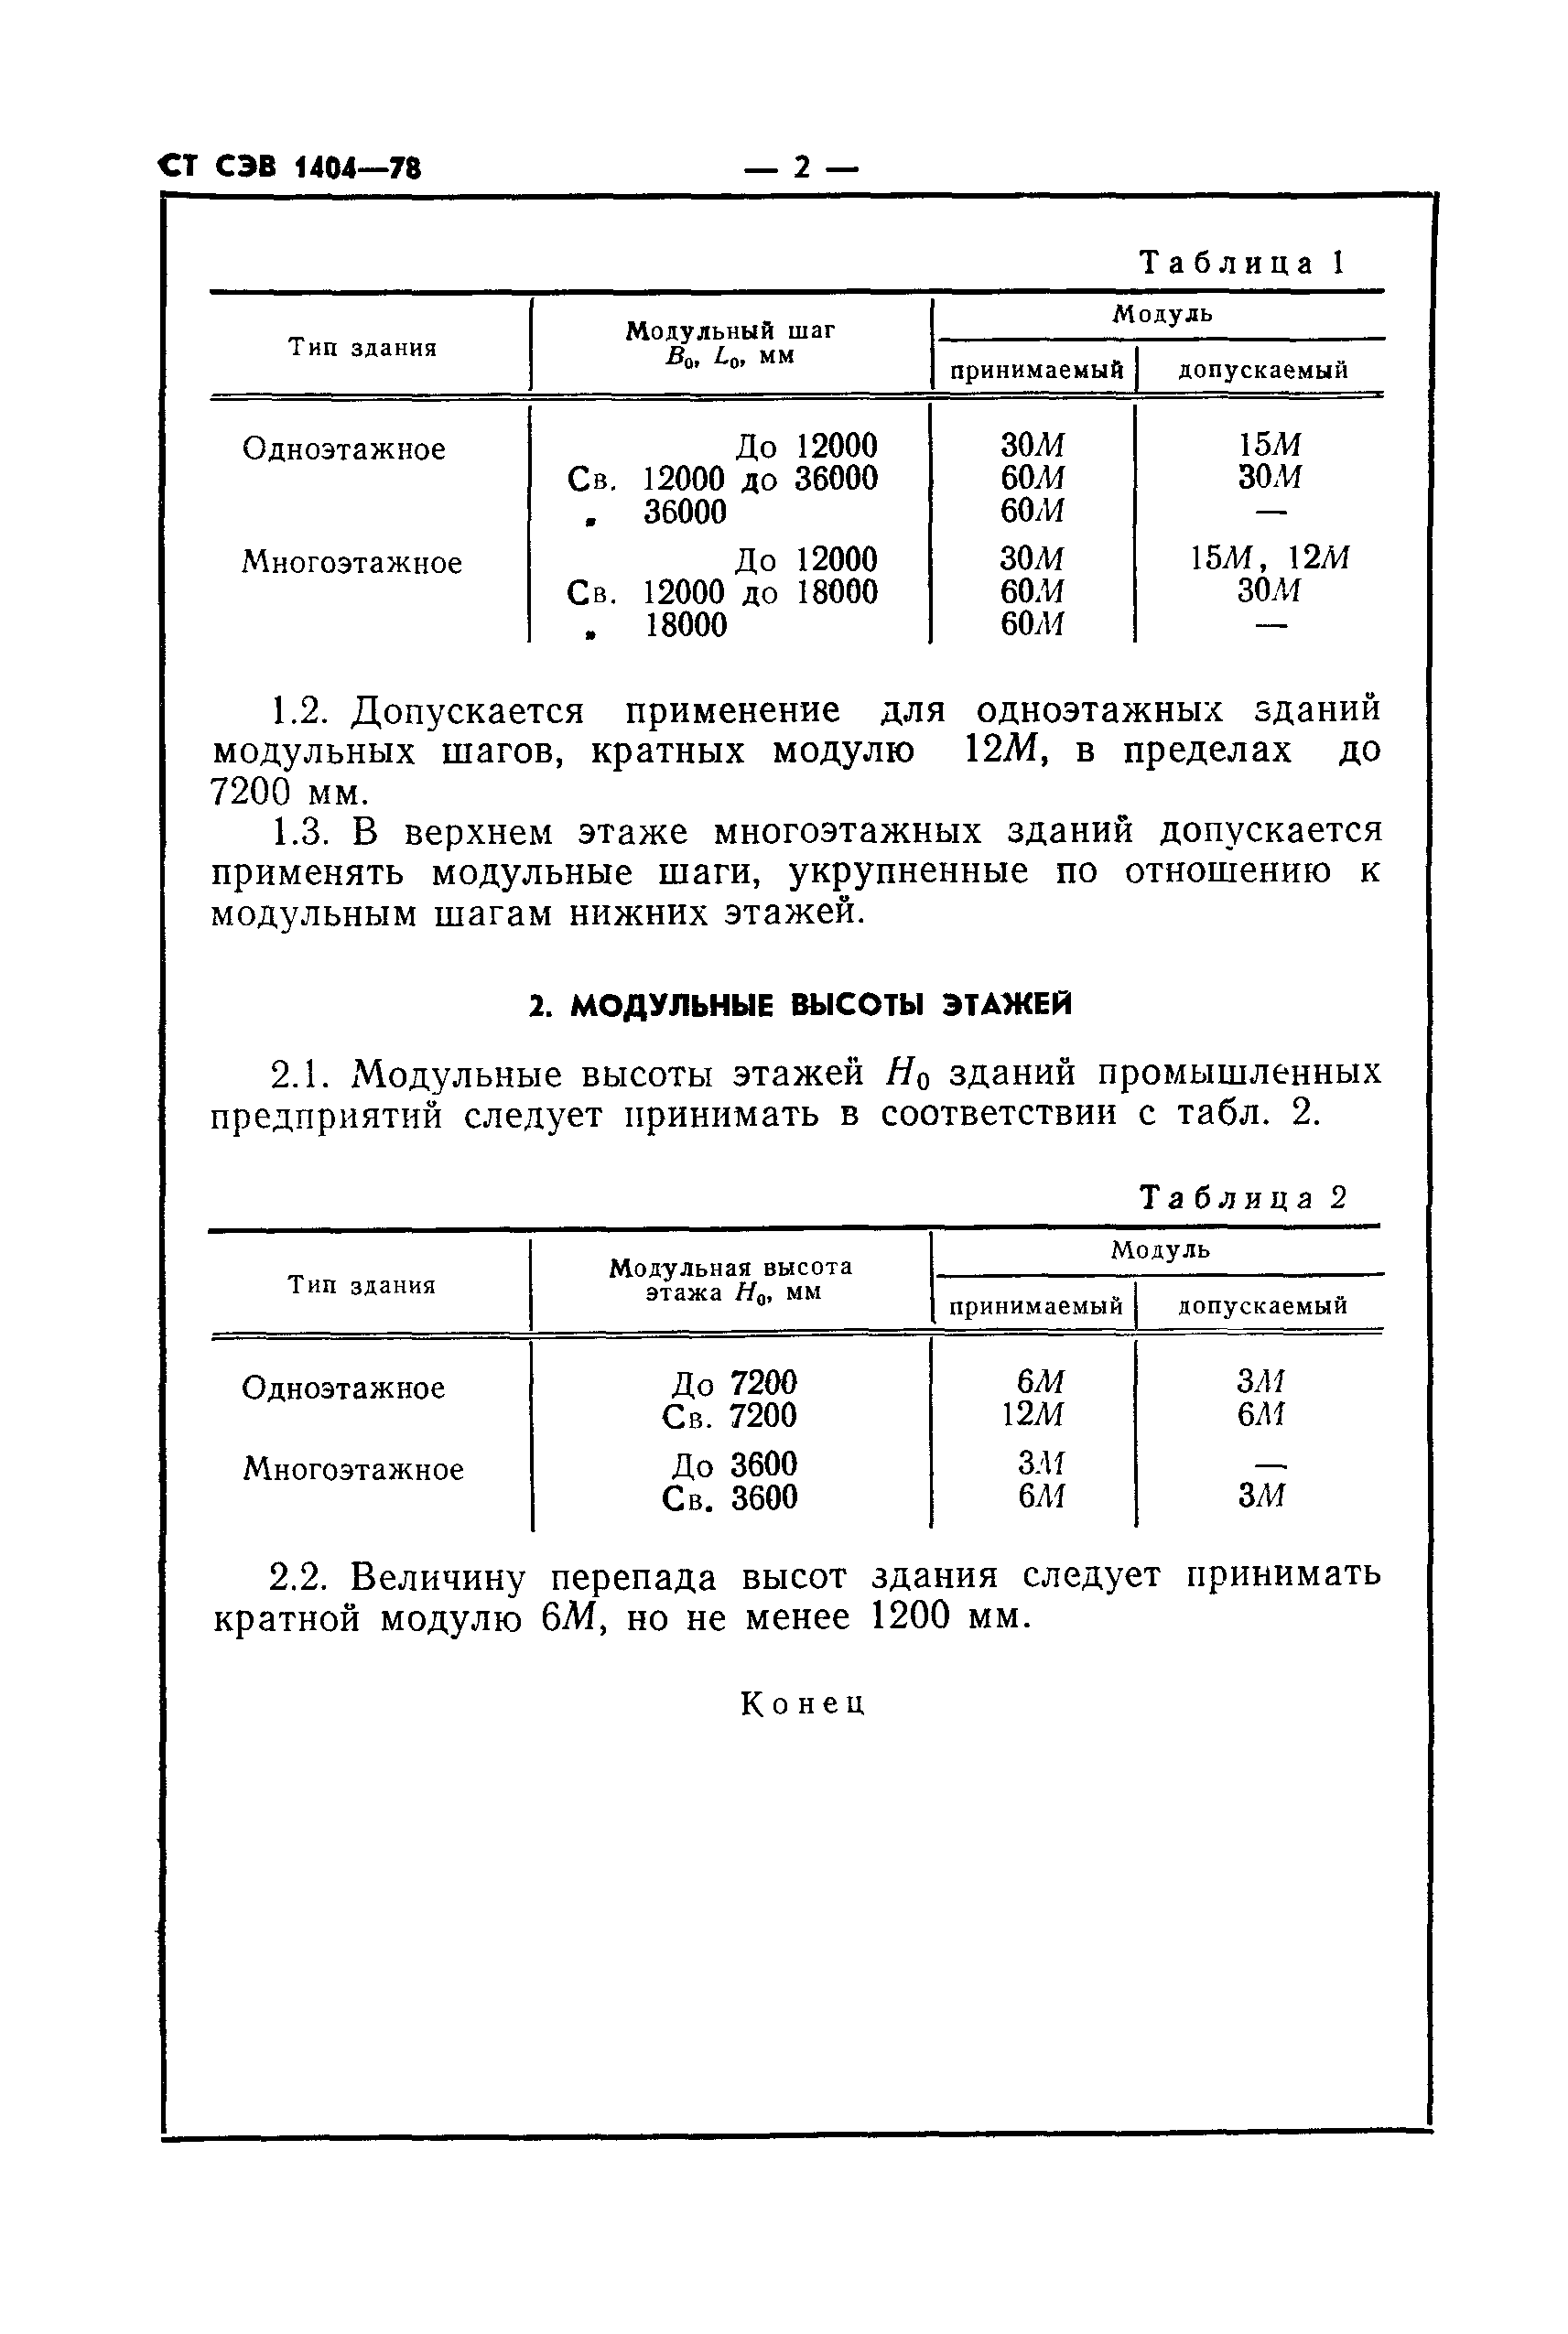 СТ СЭВ 1404-74